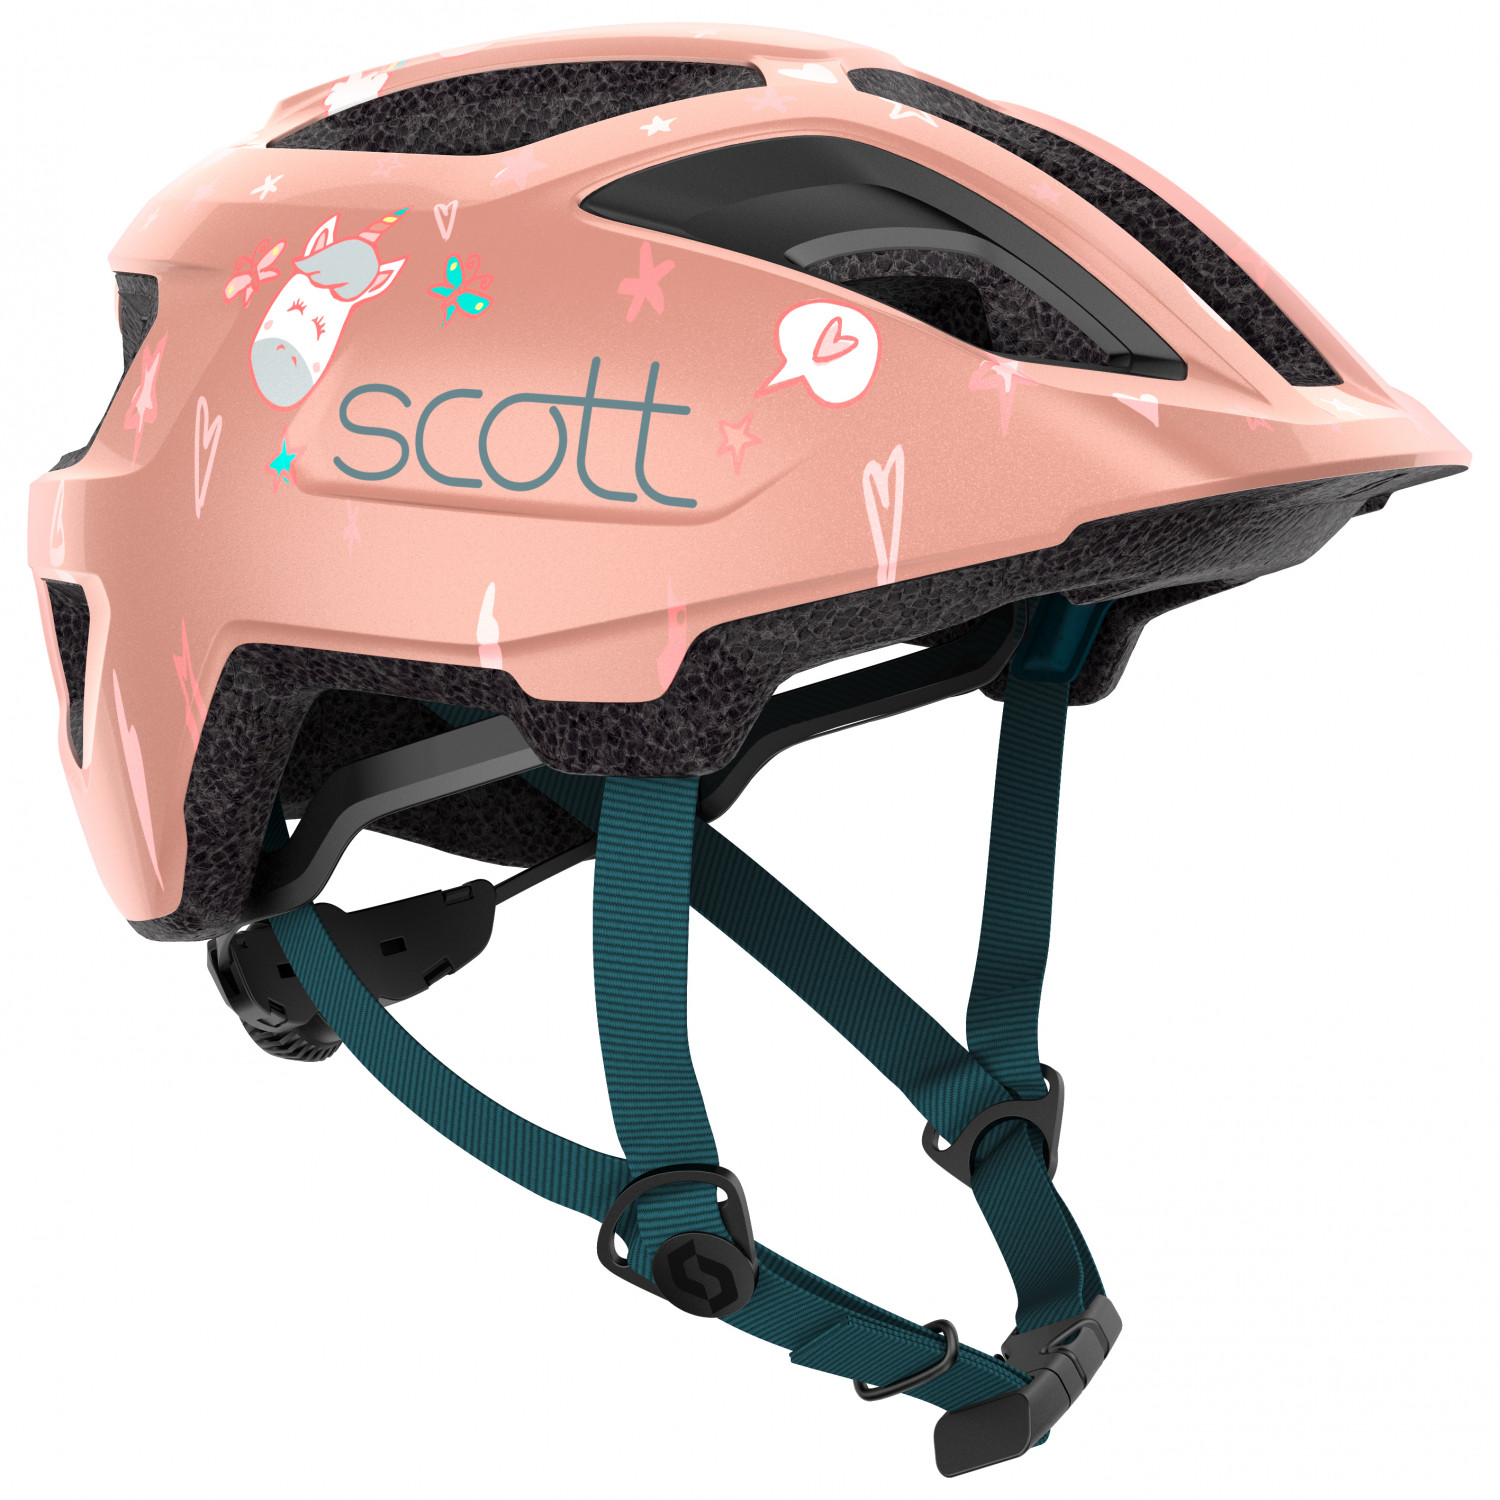 Велосипедный шлем Scott Kid's Helmet Spunto (Ce) Kid, цвет Crystal Pink шлем scott spunto kid ce atlantic blue